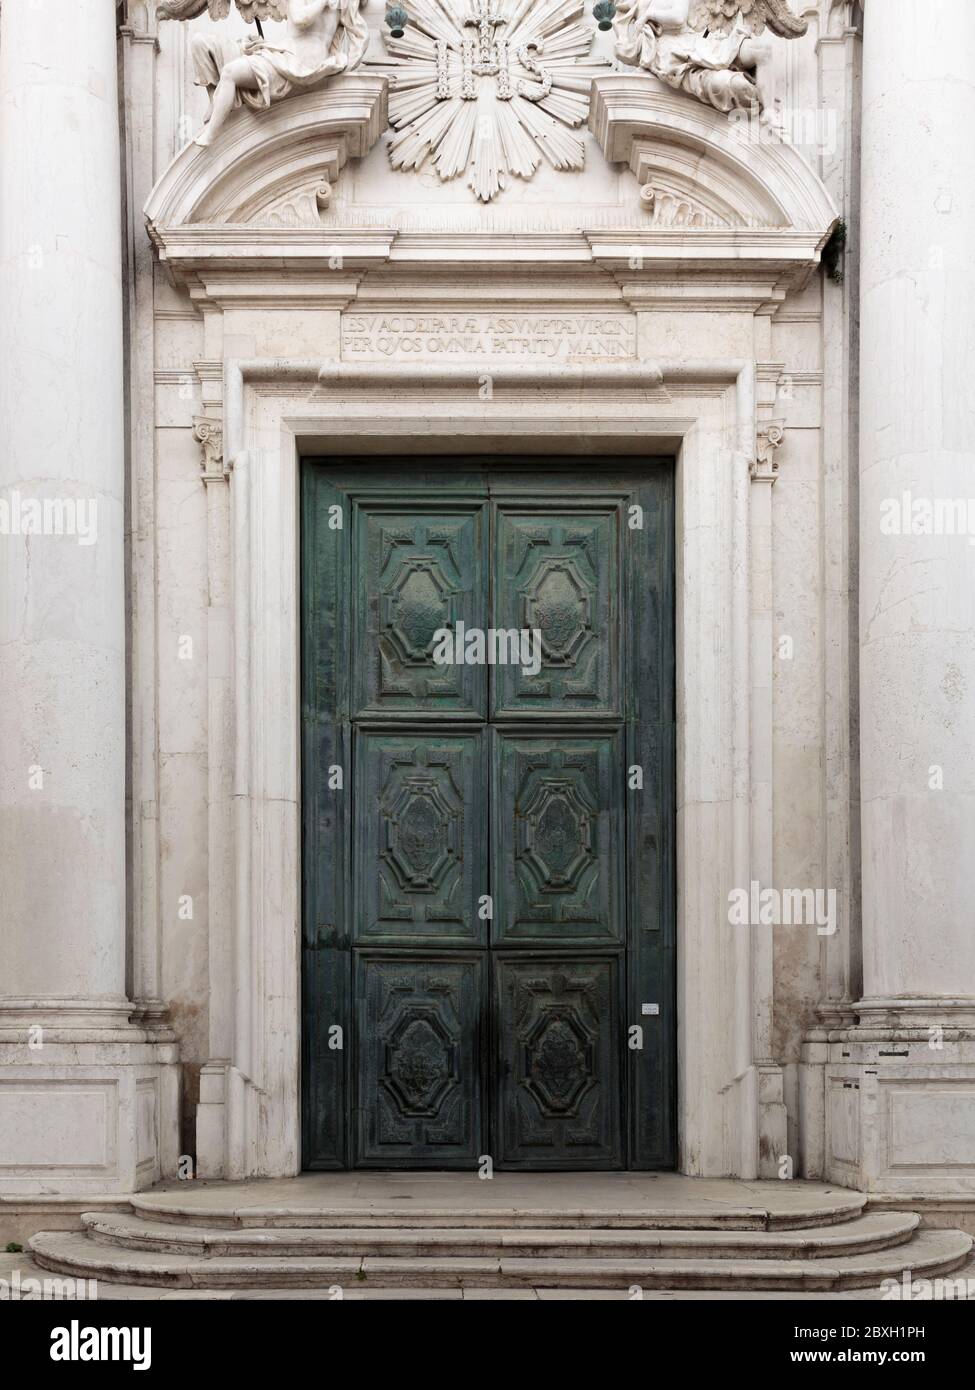 Door of the Church of Santa Maria Assunta - The Jesuits, Venice, Italy Stock Photo